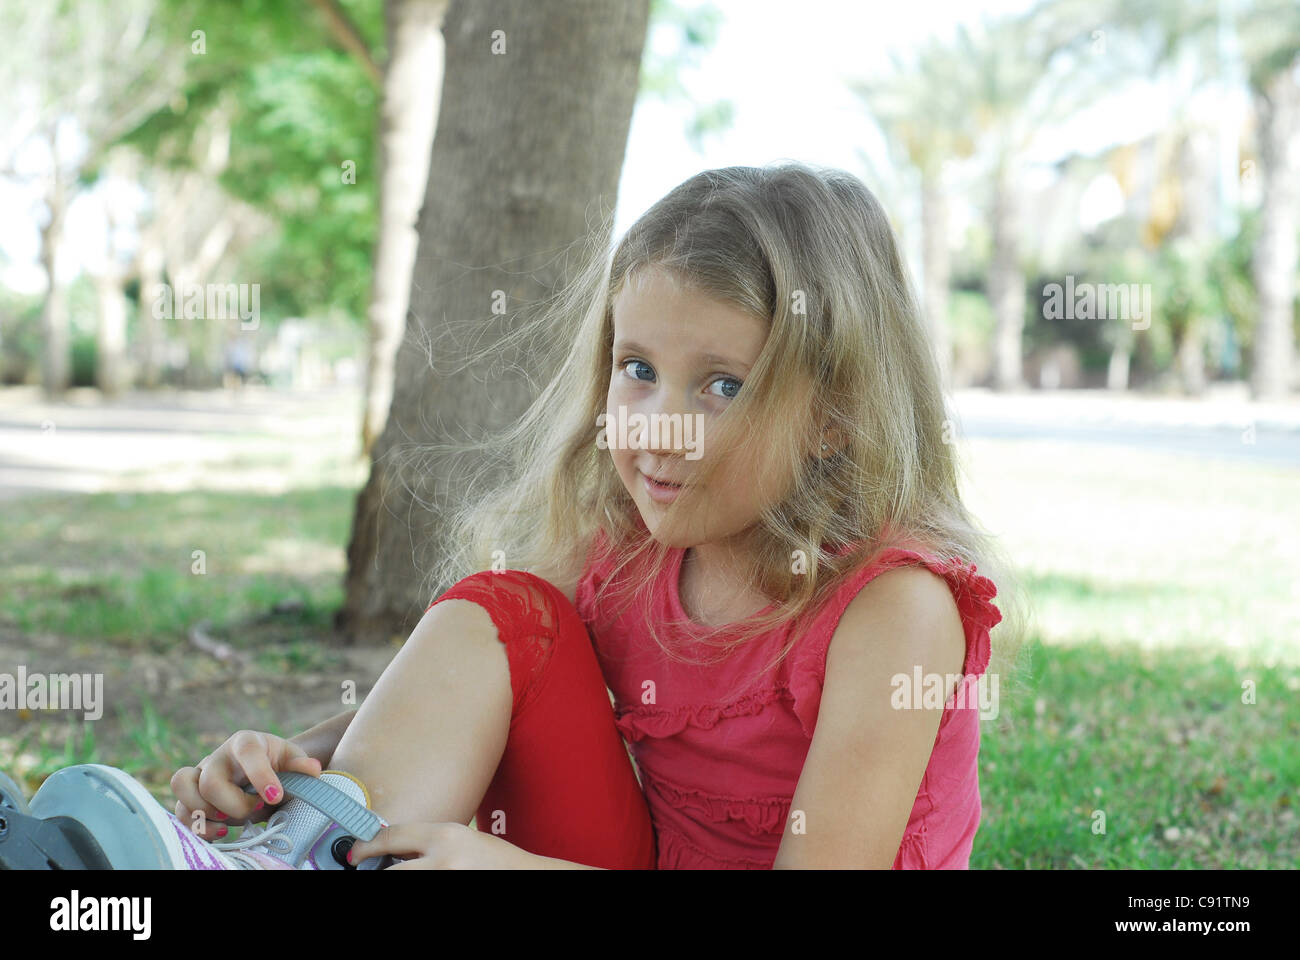 Los niños vestido de niña rubia películas en el parque Foto de stock